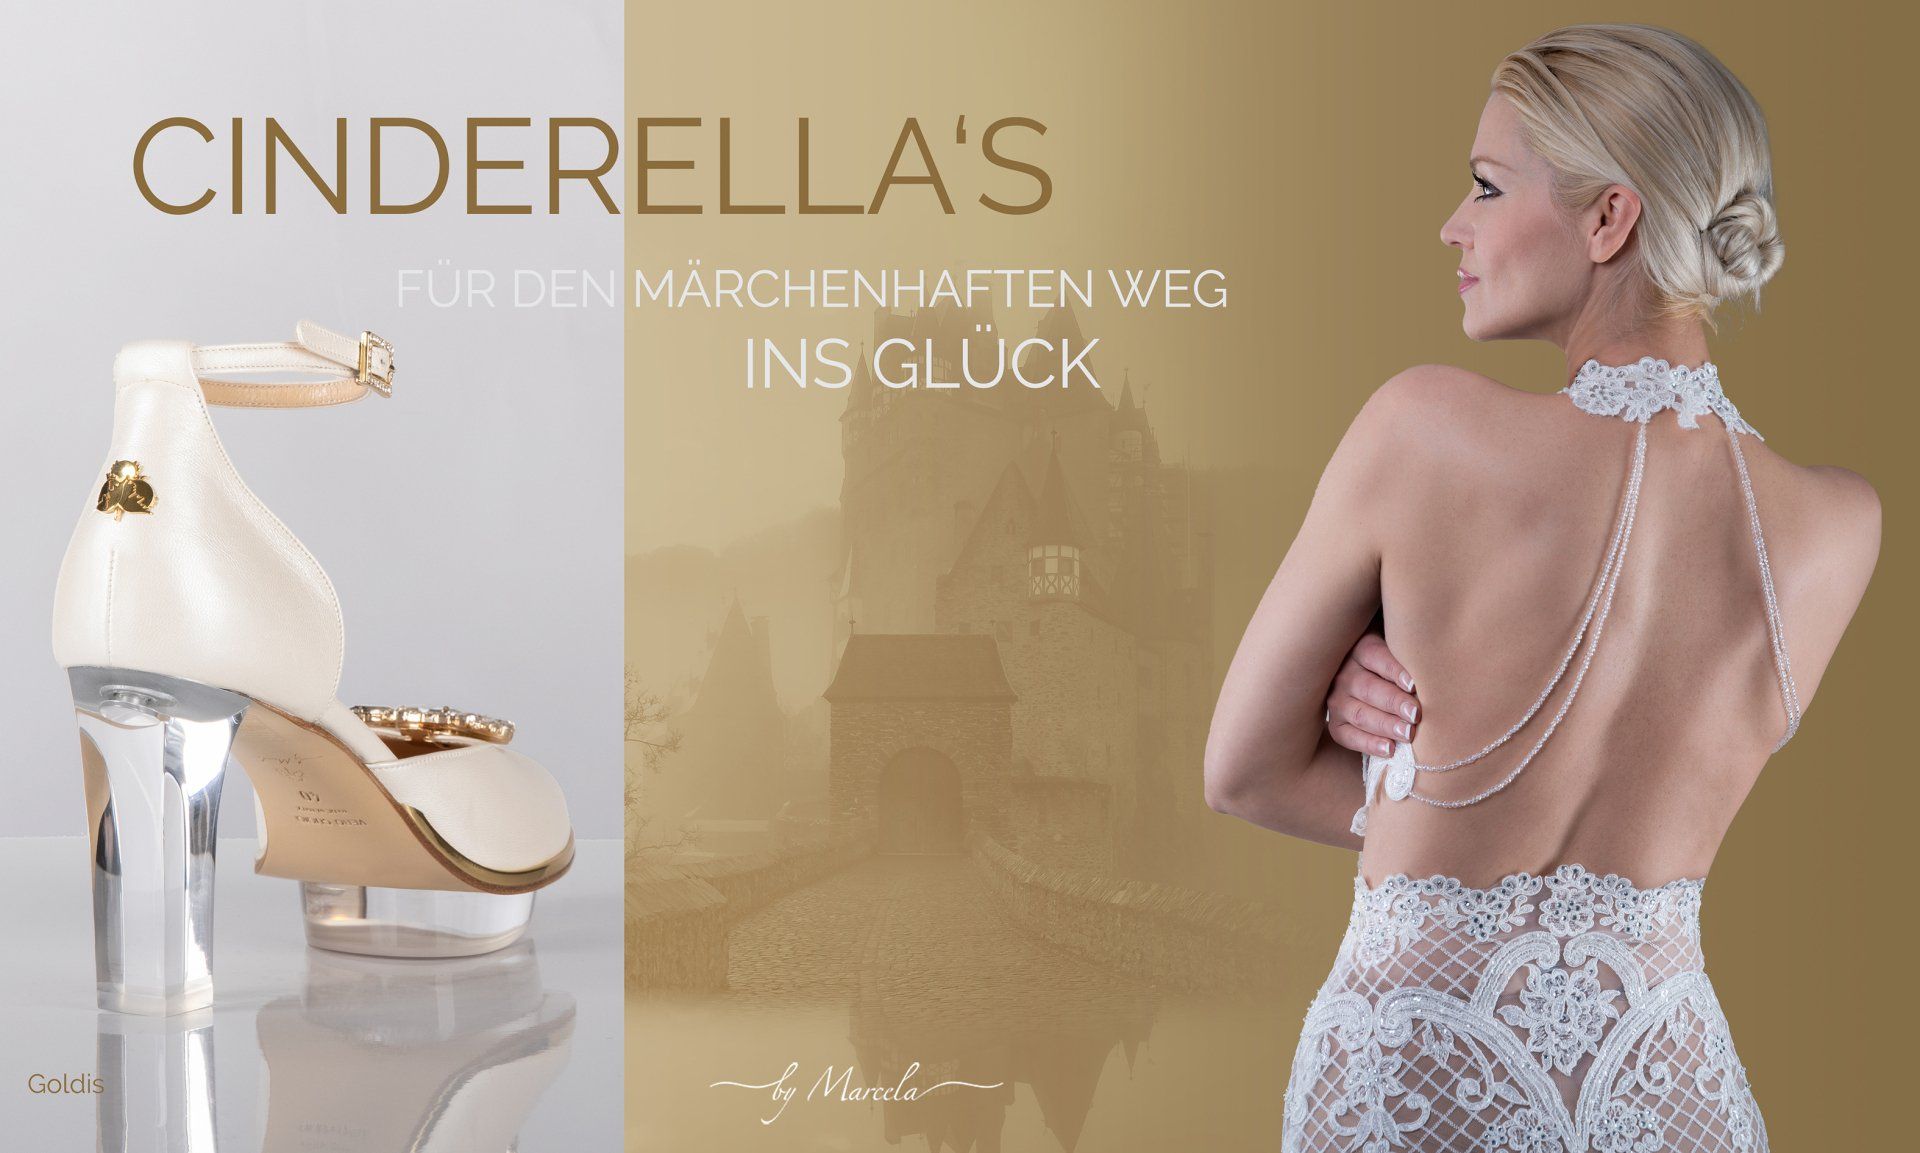 Cinderellas by Marcela, Cinderellas Shoes, Creme gold Cinderella Dirndl Schuhe für Hochzeit mit transparentem high heel namens Goldis